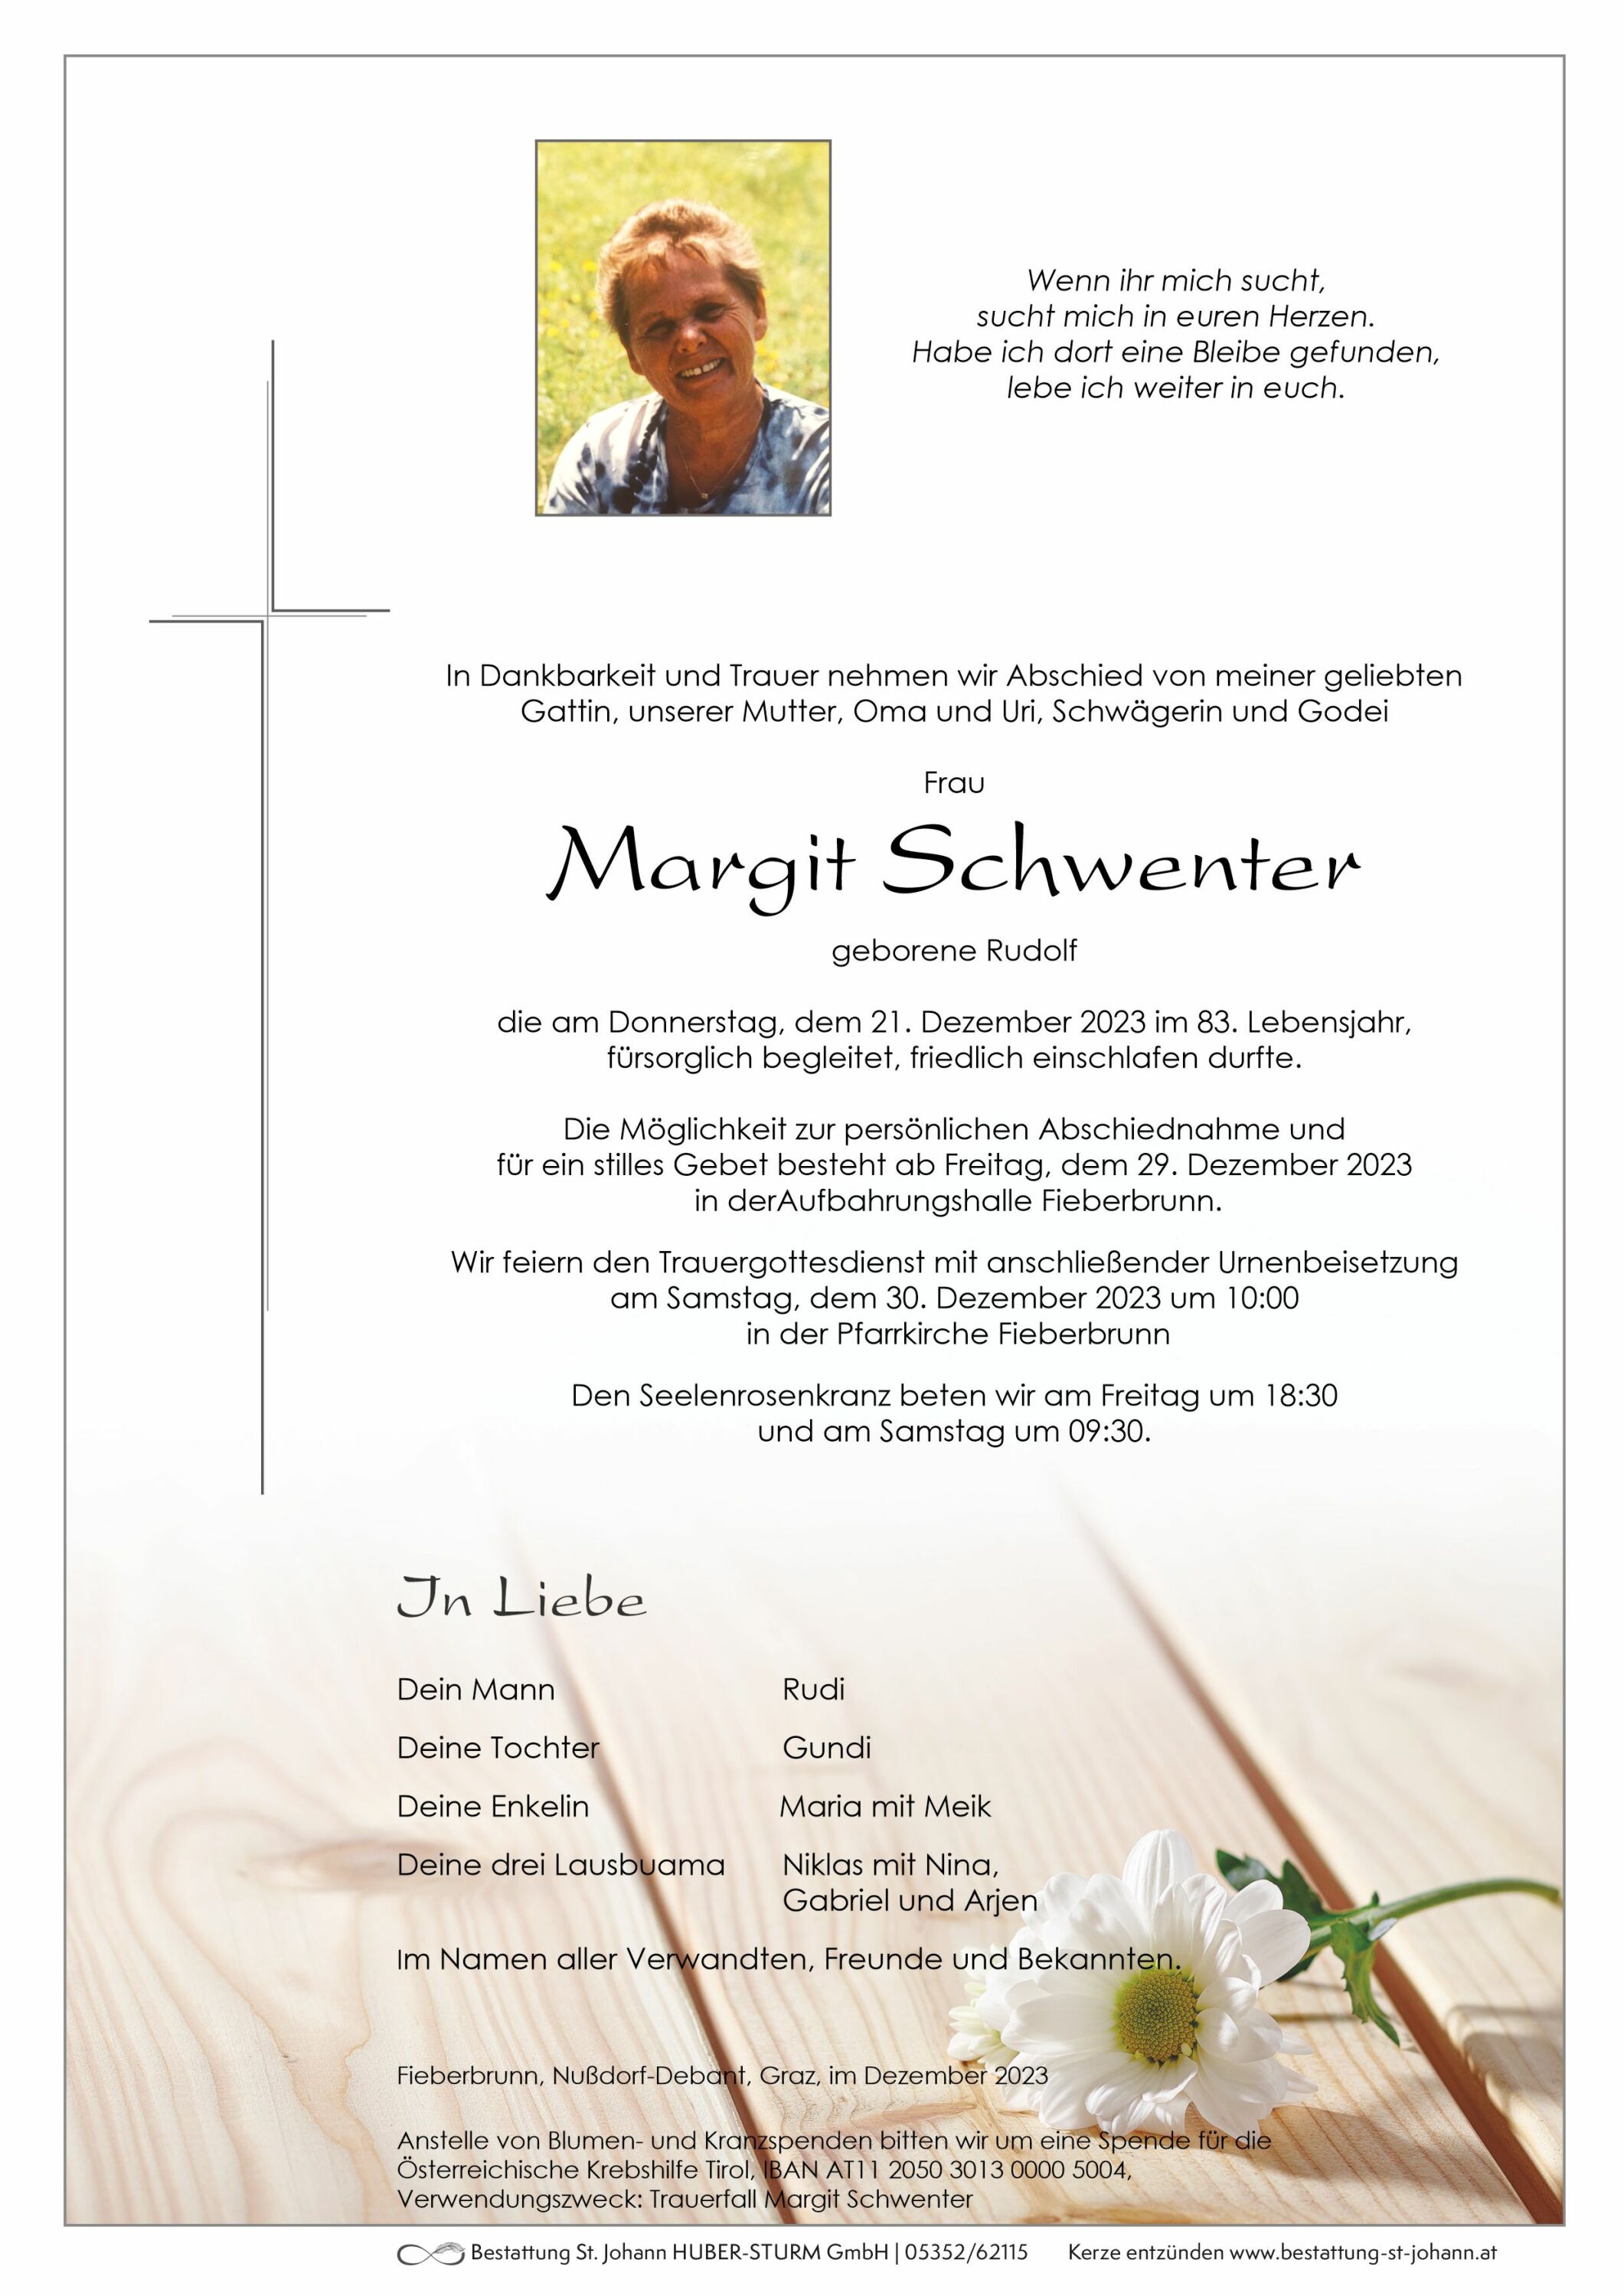 Margit Schwenter